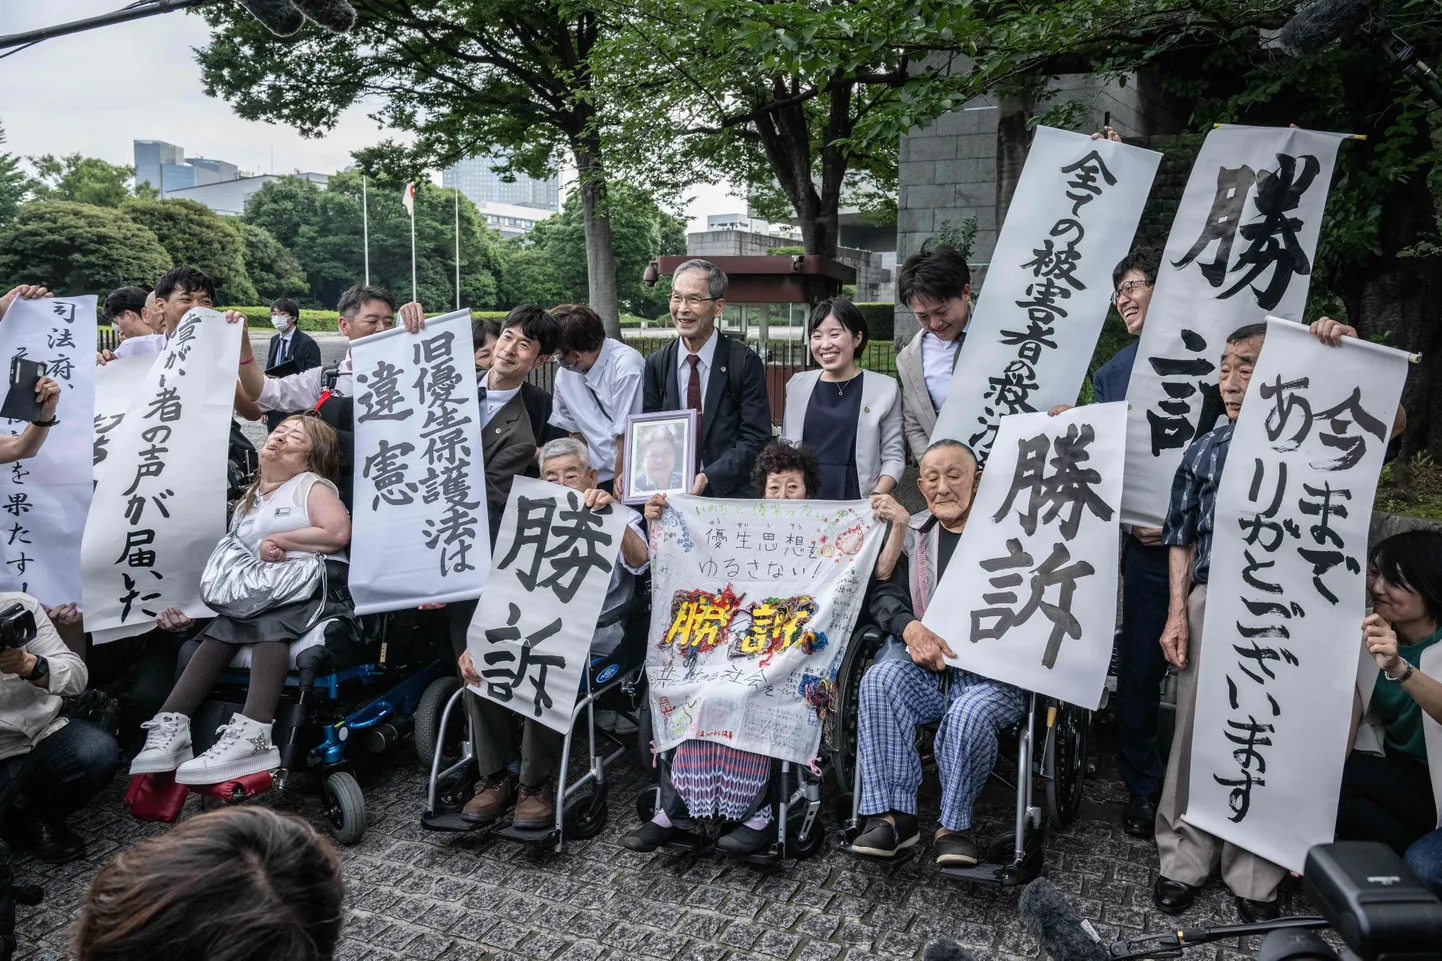 Jaapani eugeenikaseaduse ohvrid tähistamas ülemkohtu otsust Tokyos.